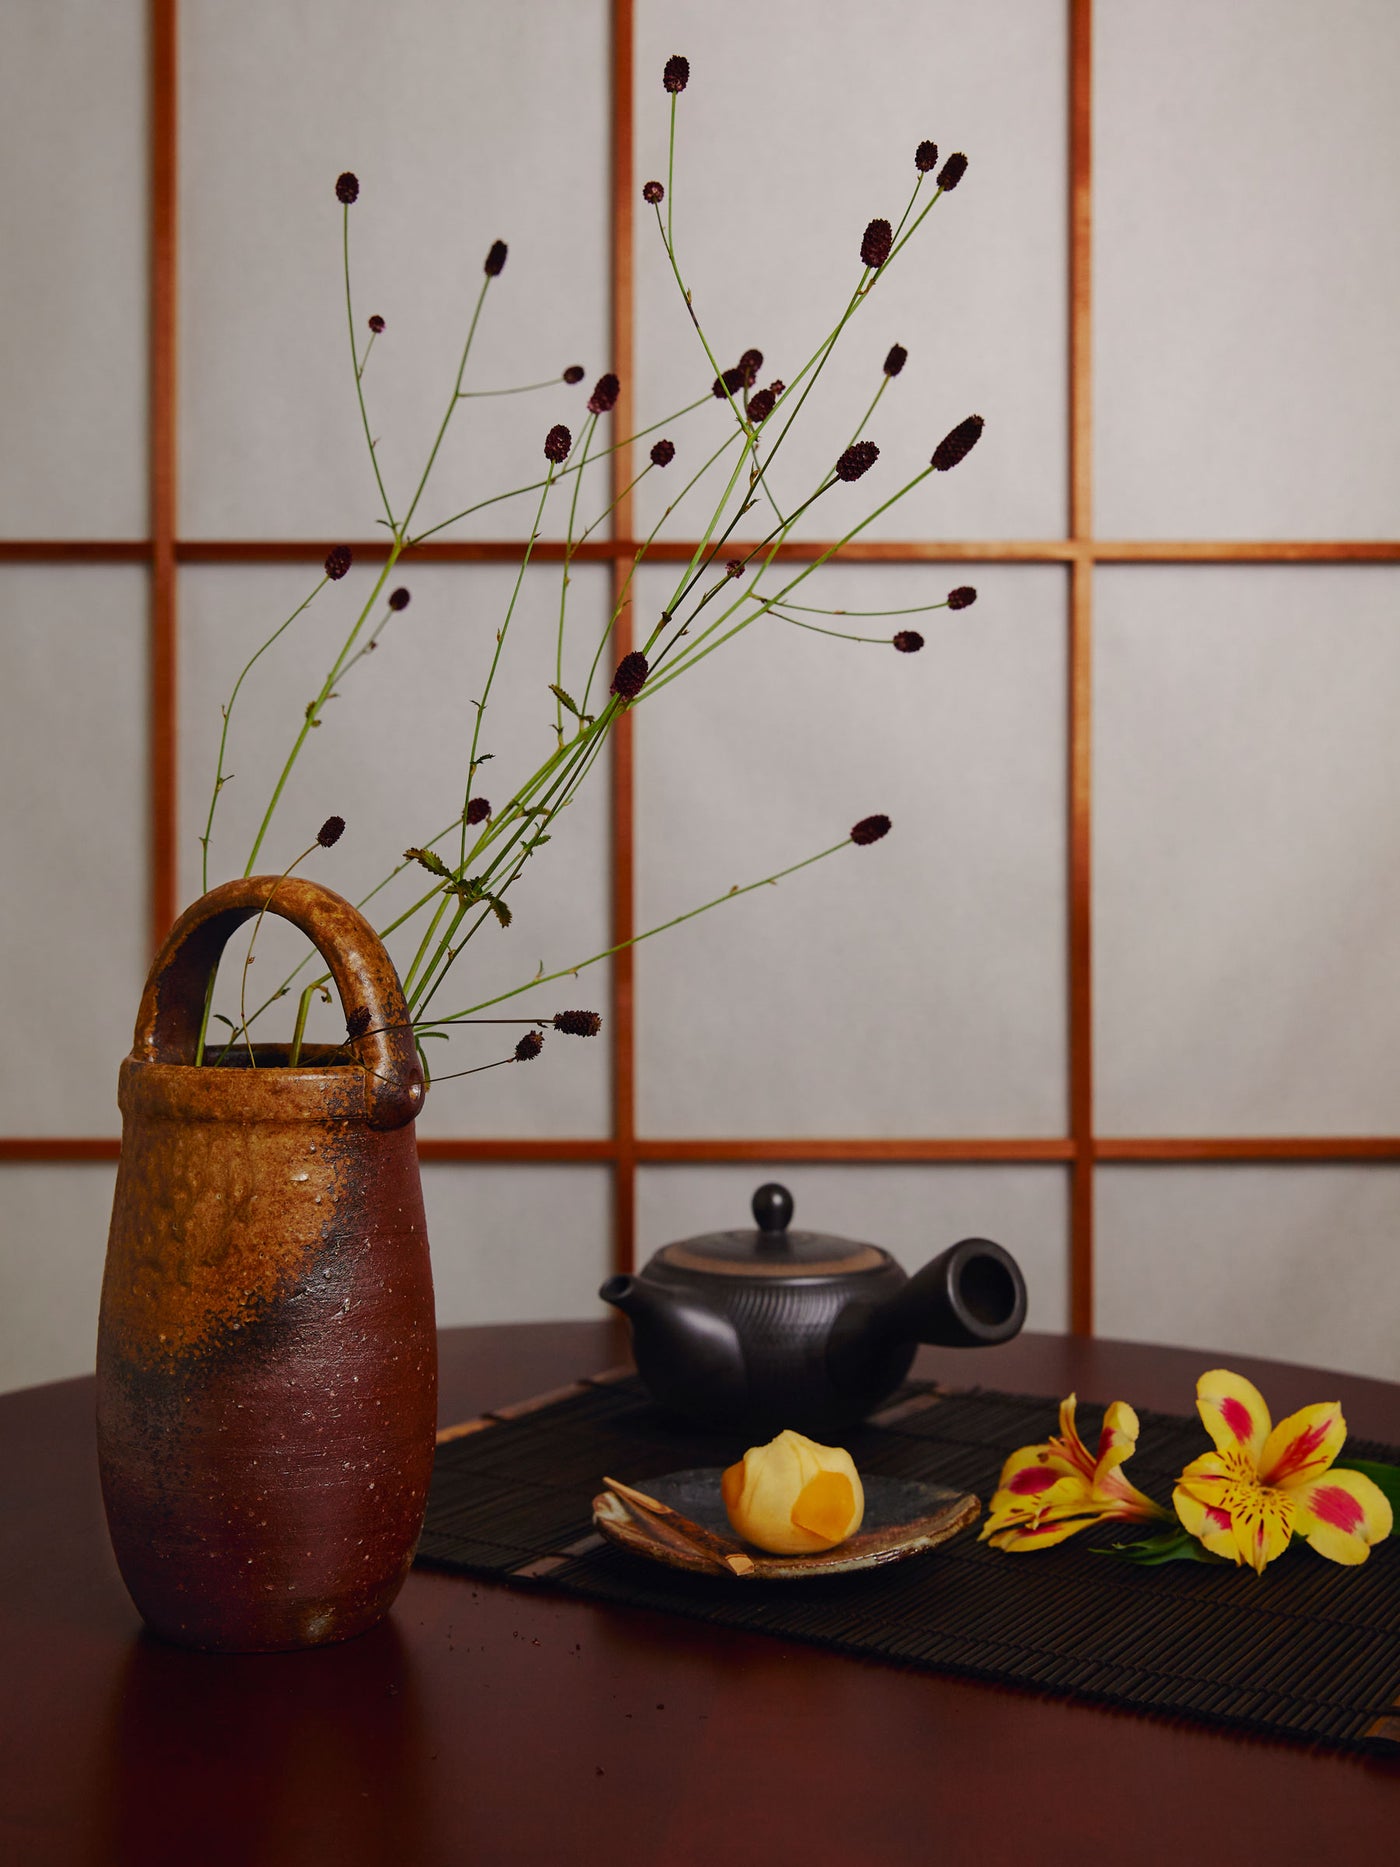 Vase Japonais Ikebana Bizen Goma par Hozan avec Poignée